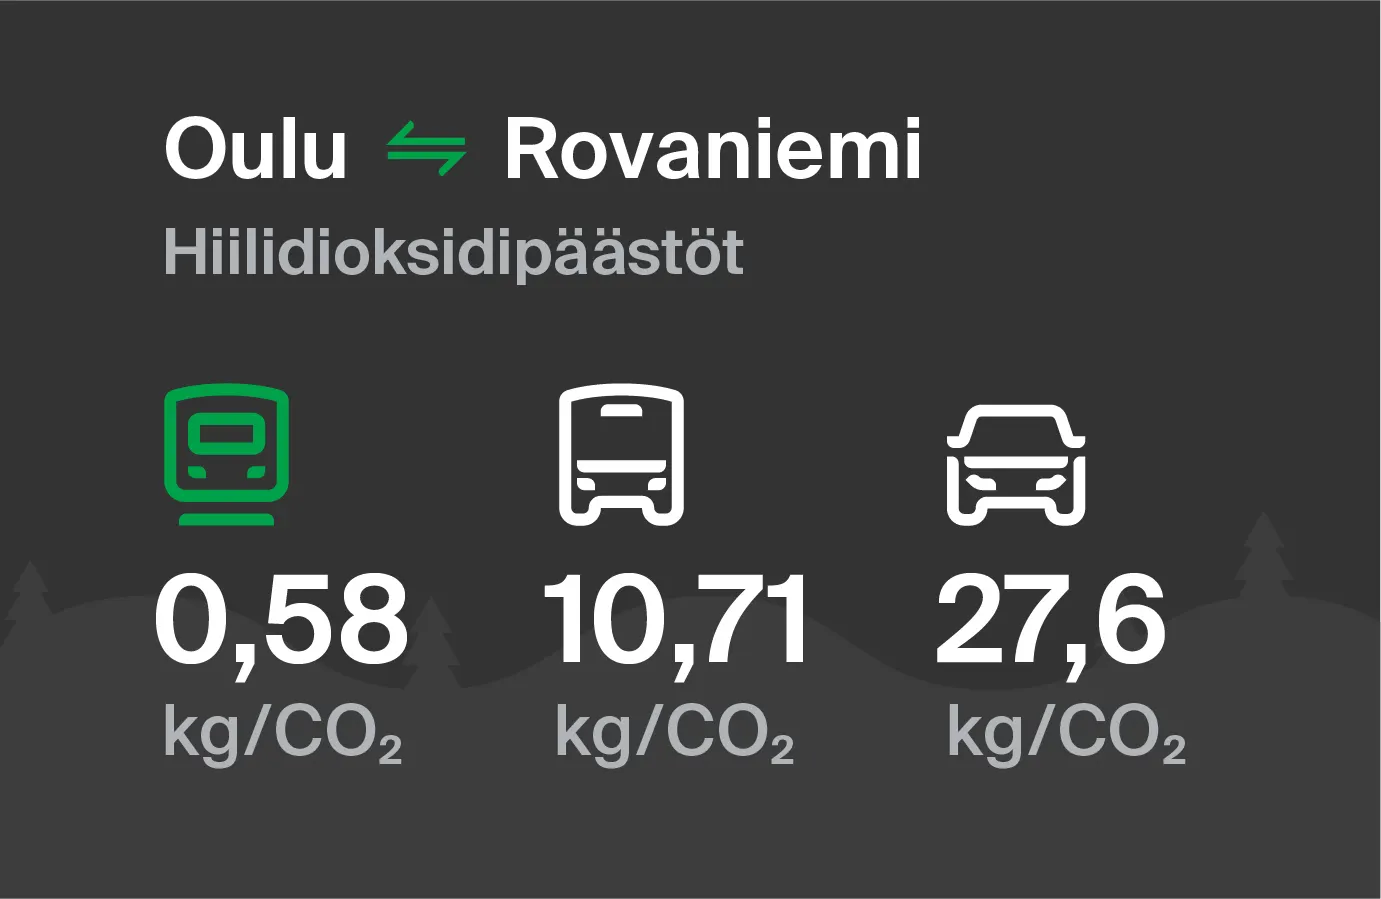 Hiilidioksidipäästöt Oulusta Rovaniemelle eri kulkuvälinemuodoilla: junalla 0,58 kg/CO2, bussilla 10,71 kg/CO2 ja autolla 27,6 kg/CO2.